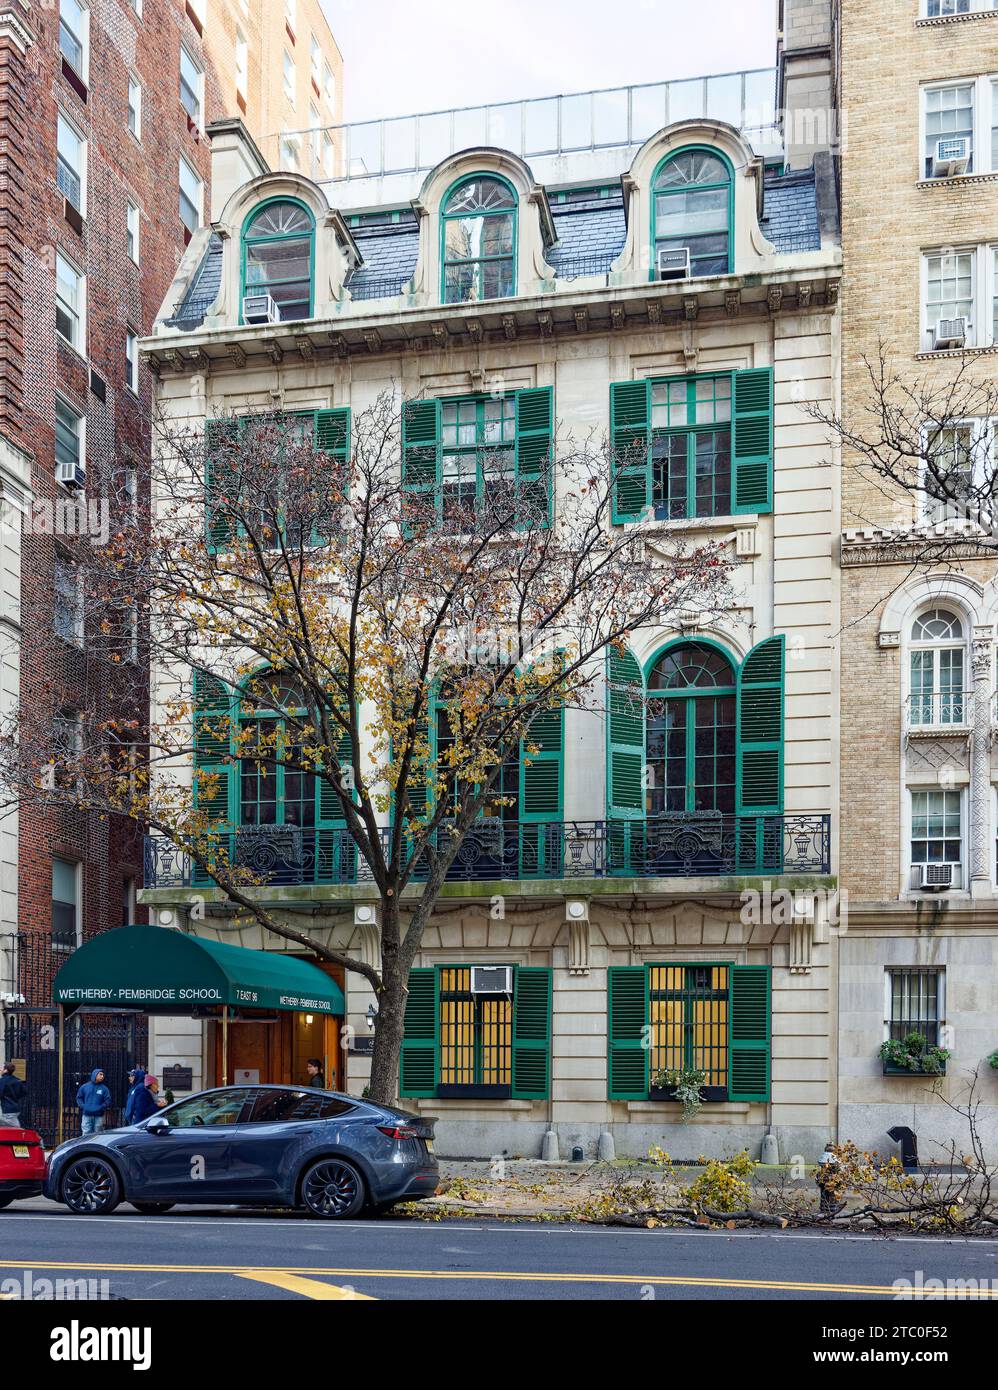 La Wetherby-Pembridge School occupa il punto di riferimento di New York, Ogden Codman House, al 7 East 96th Street, nell'Upper East Side di Manhattan. Foto Stock